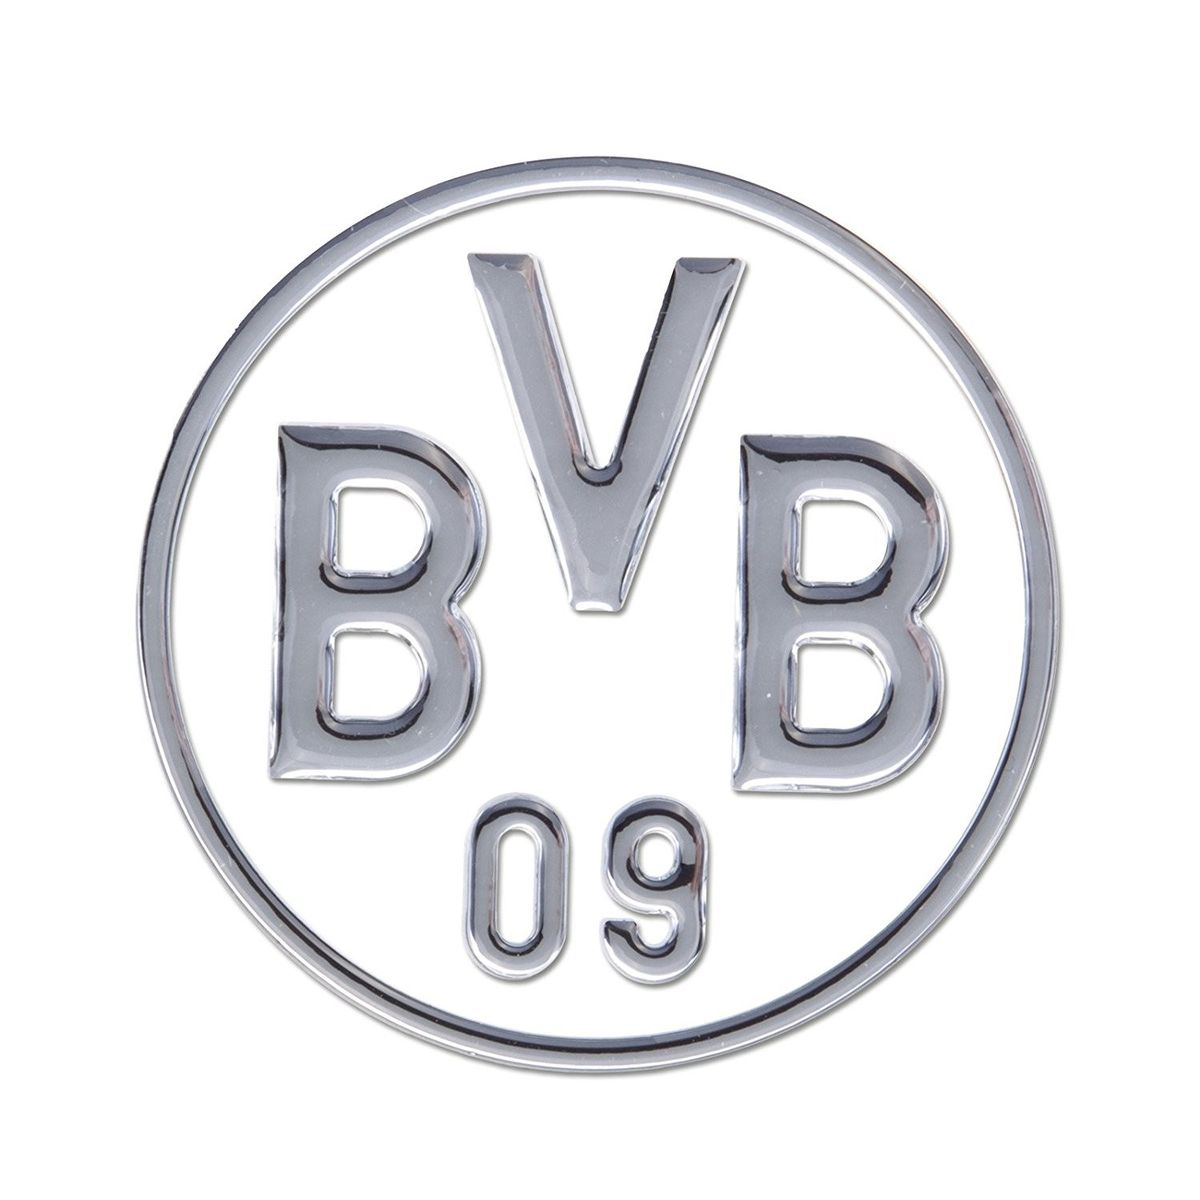 BVB 89140430 - BVB-Auto-Aufkleber silber, Borussia Dortmund' kaufen -  Spielwaren